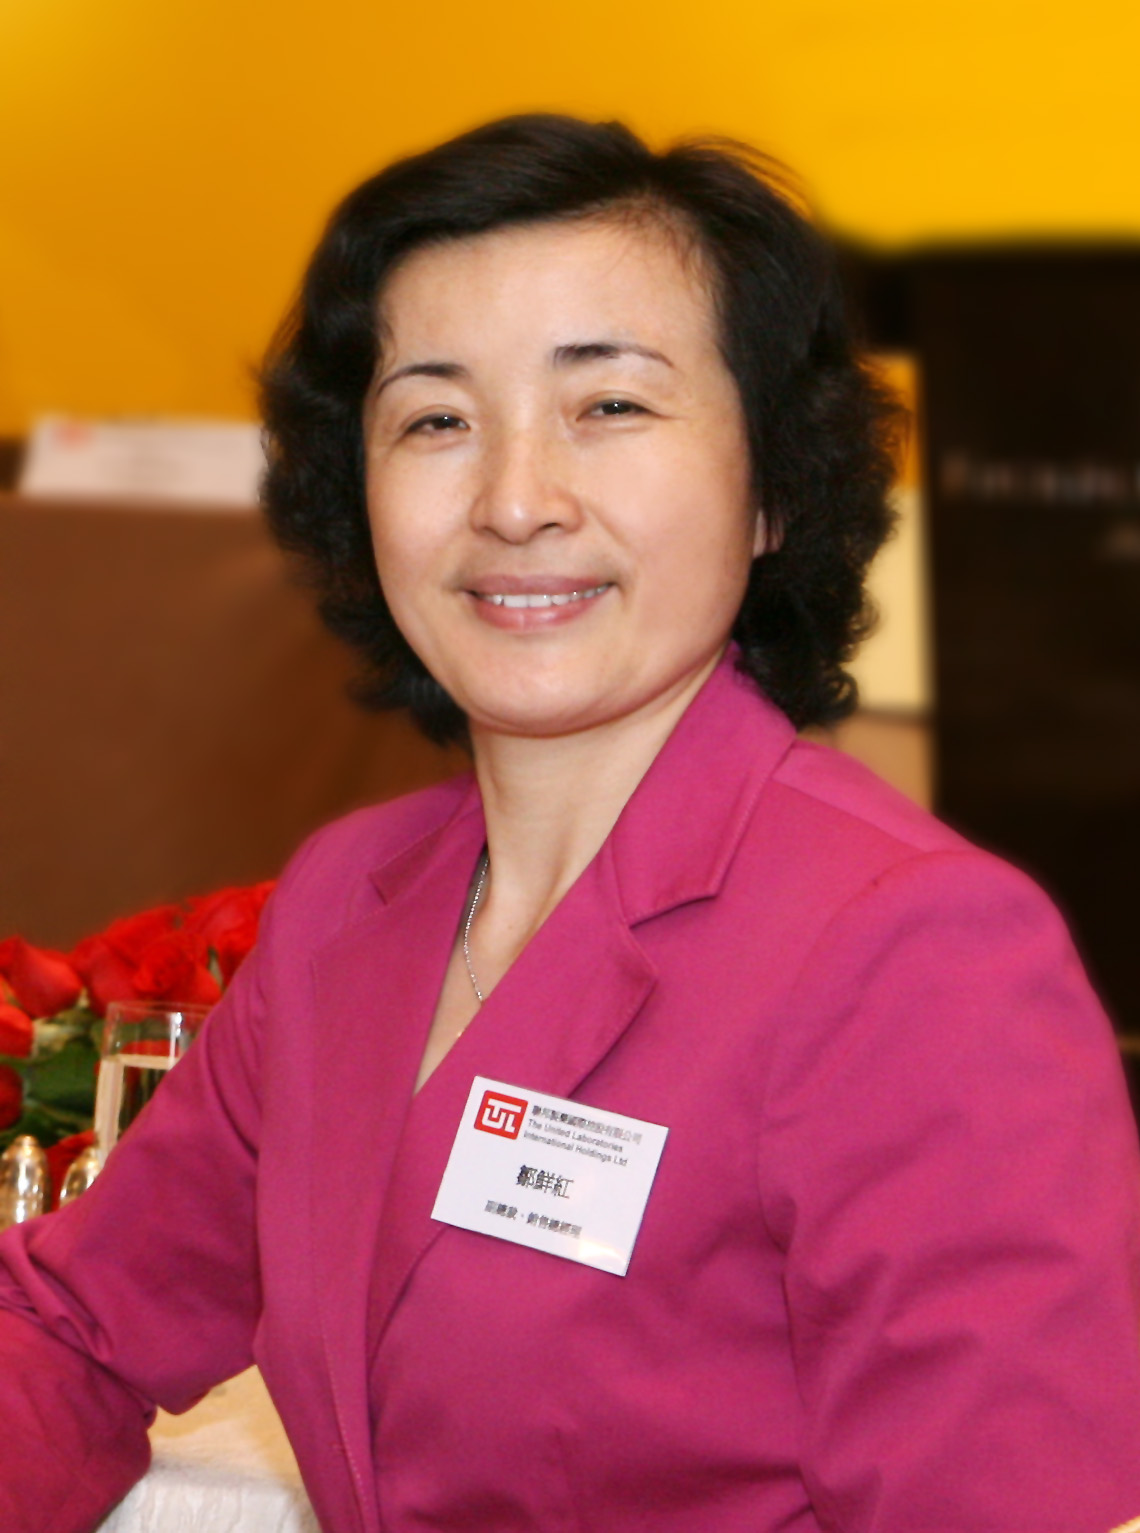 Ms. Zou Xian Hong